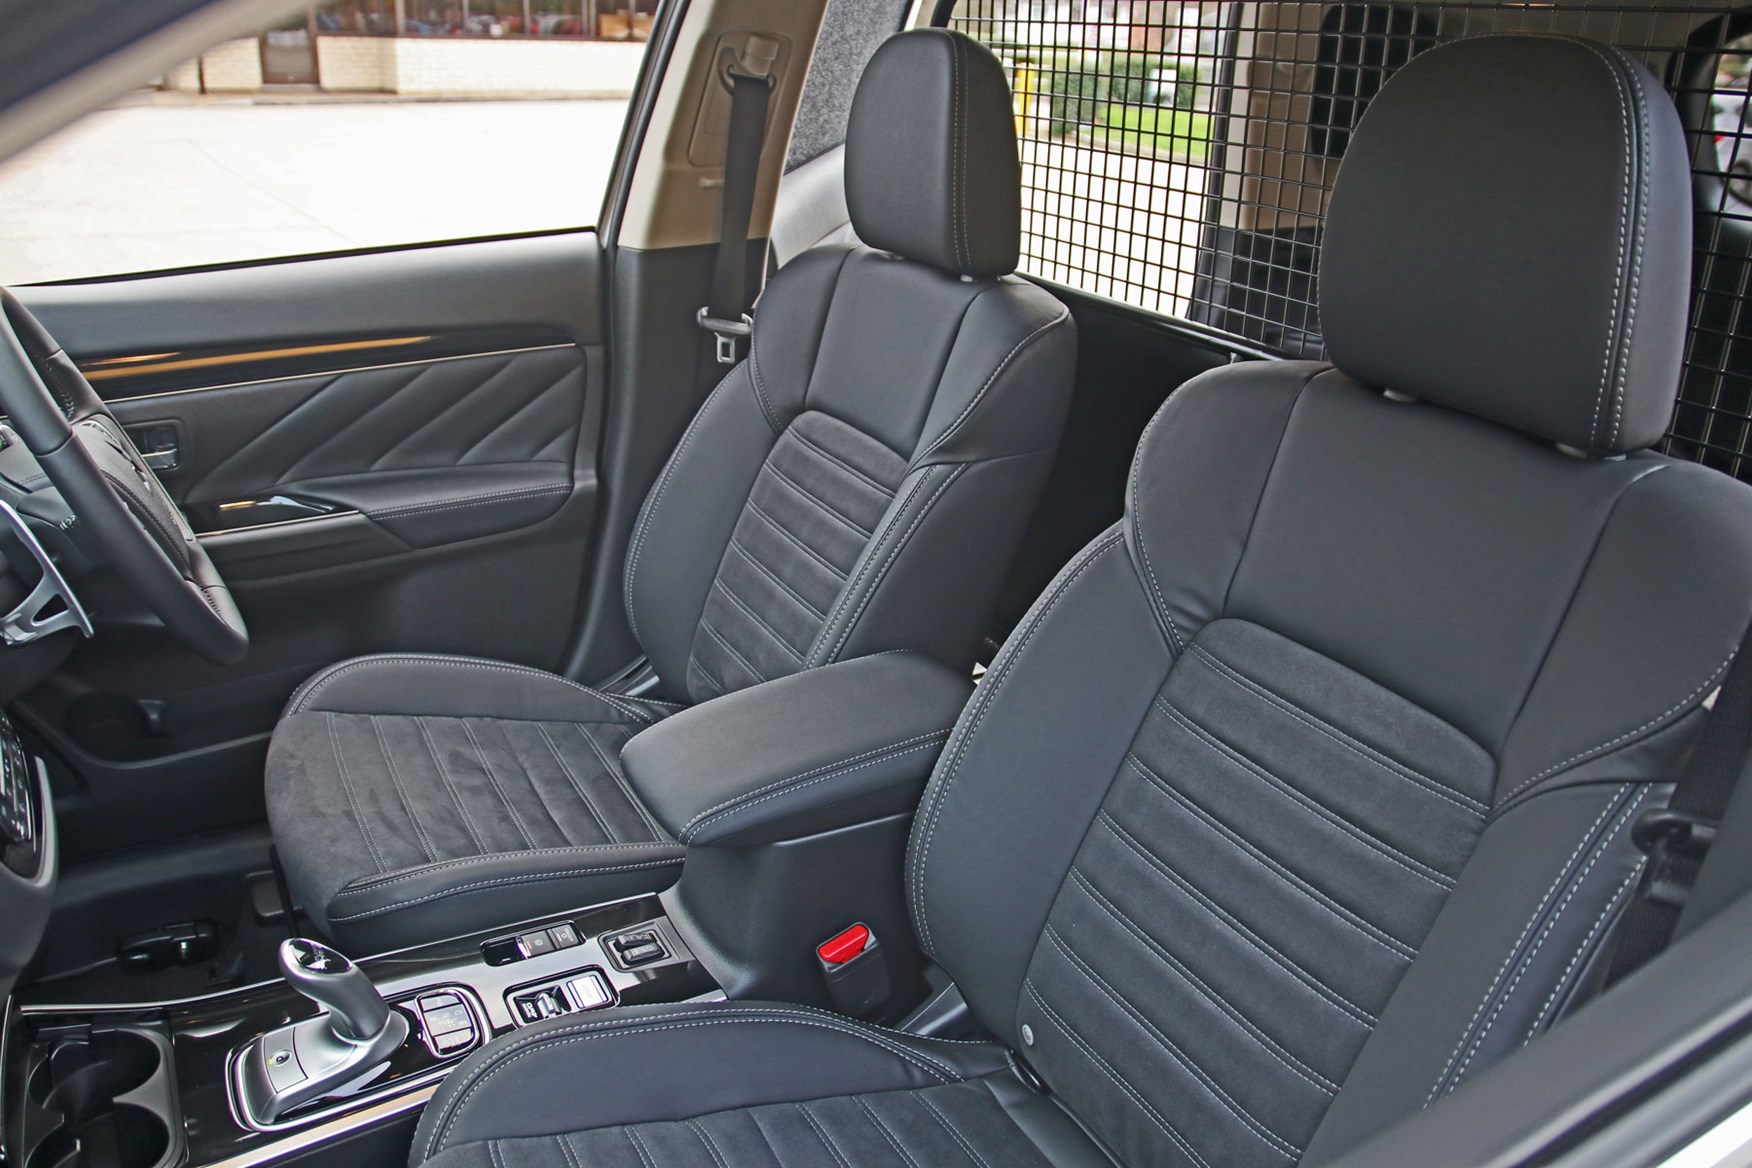 Mitsubishi Outlander Commercial 4x4 van review - seats